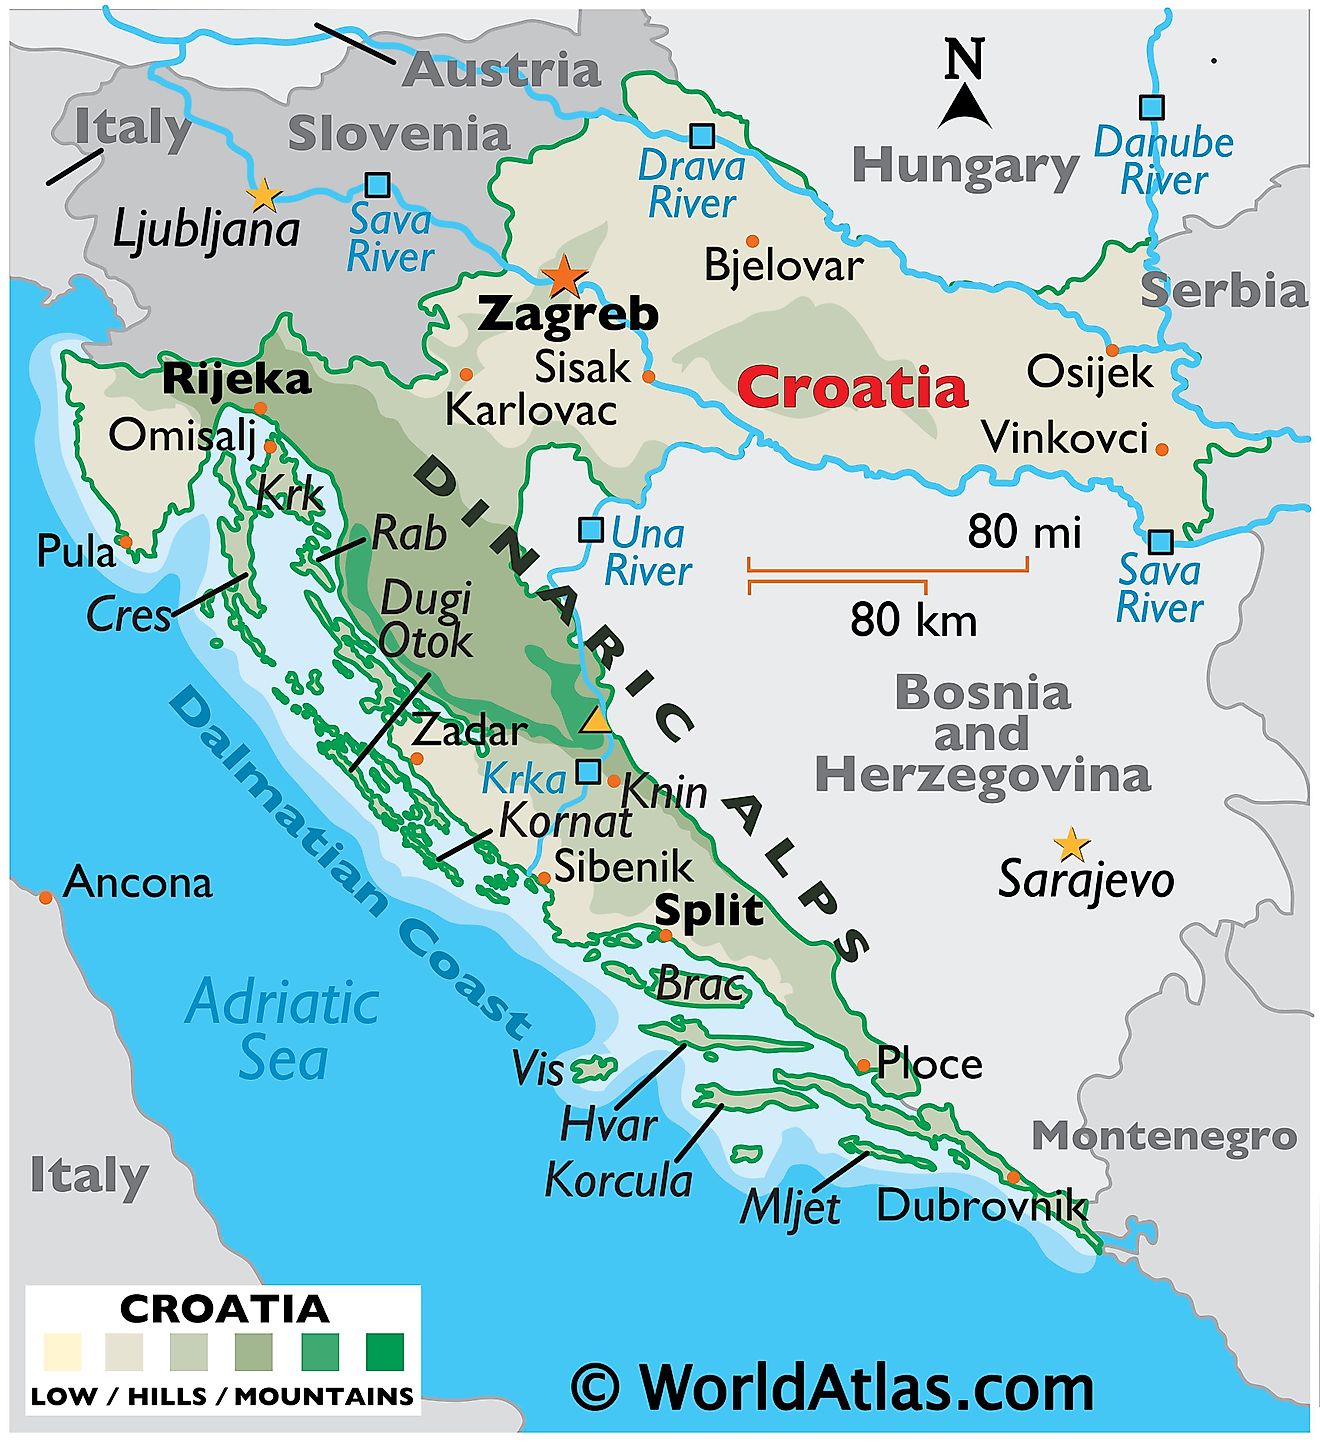 Mapa físico de Croacia que muestra el terreno, cadenas montañosas, islas, puntos extremos, ríos principales, ciudades importantes, fronteras internacionales, etc.